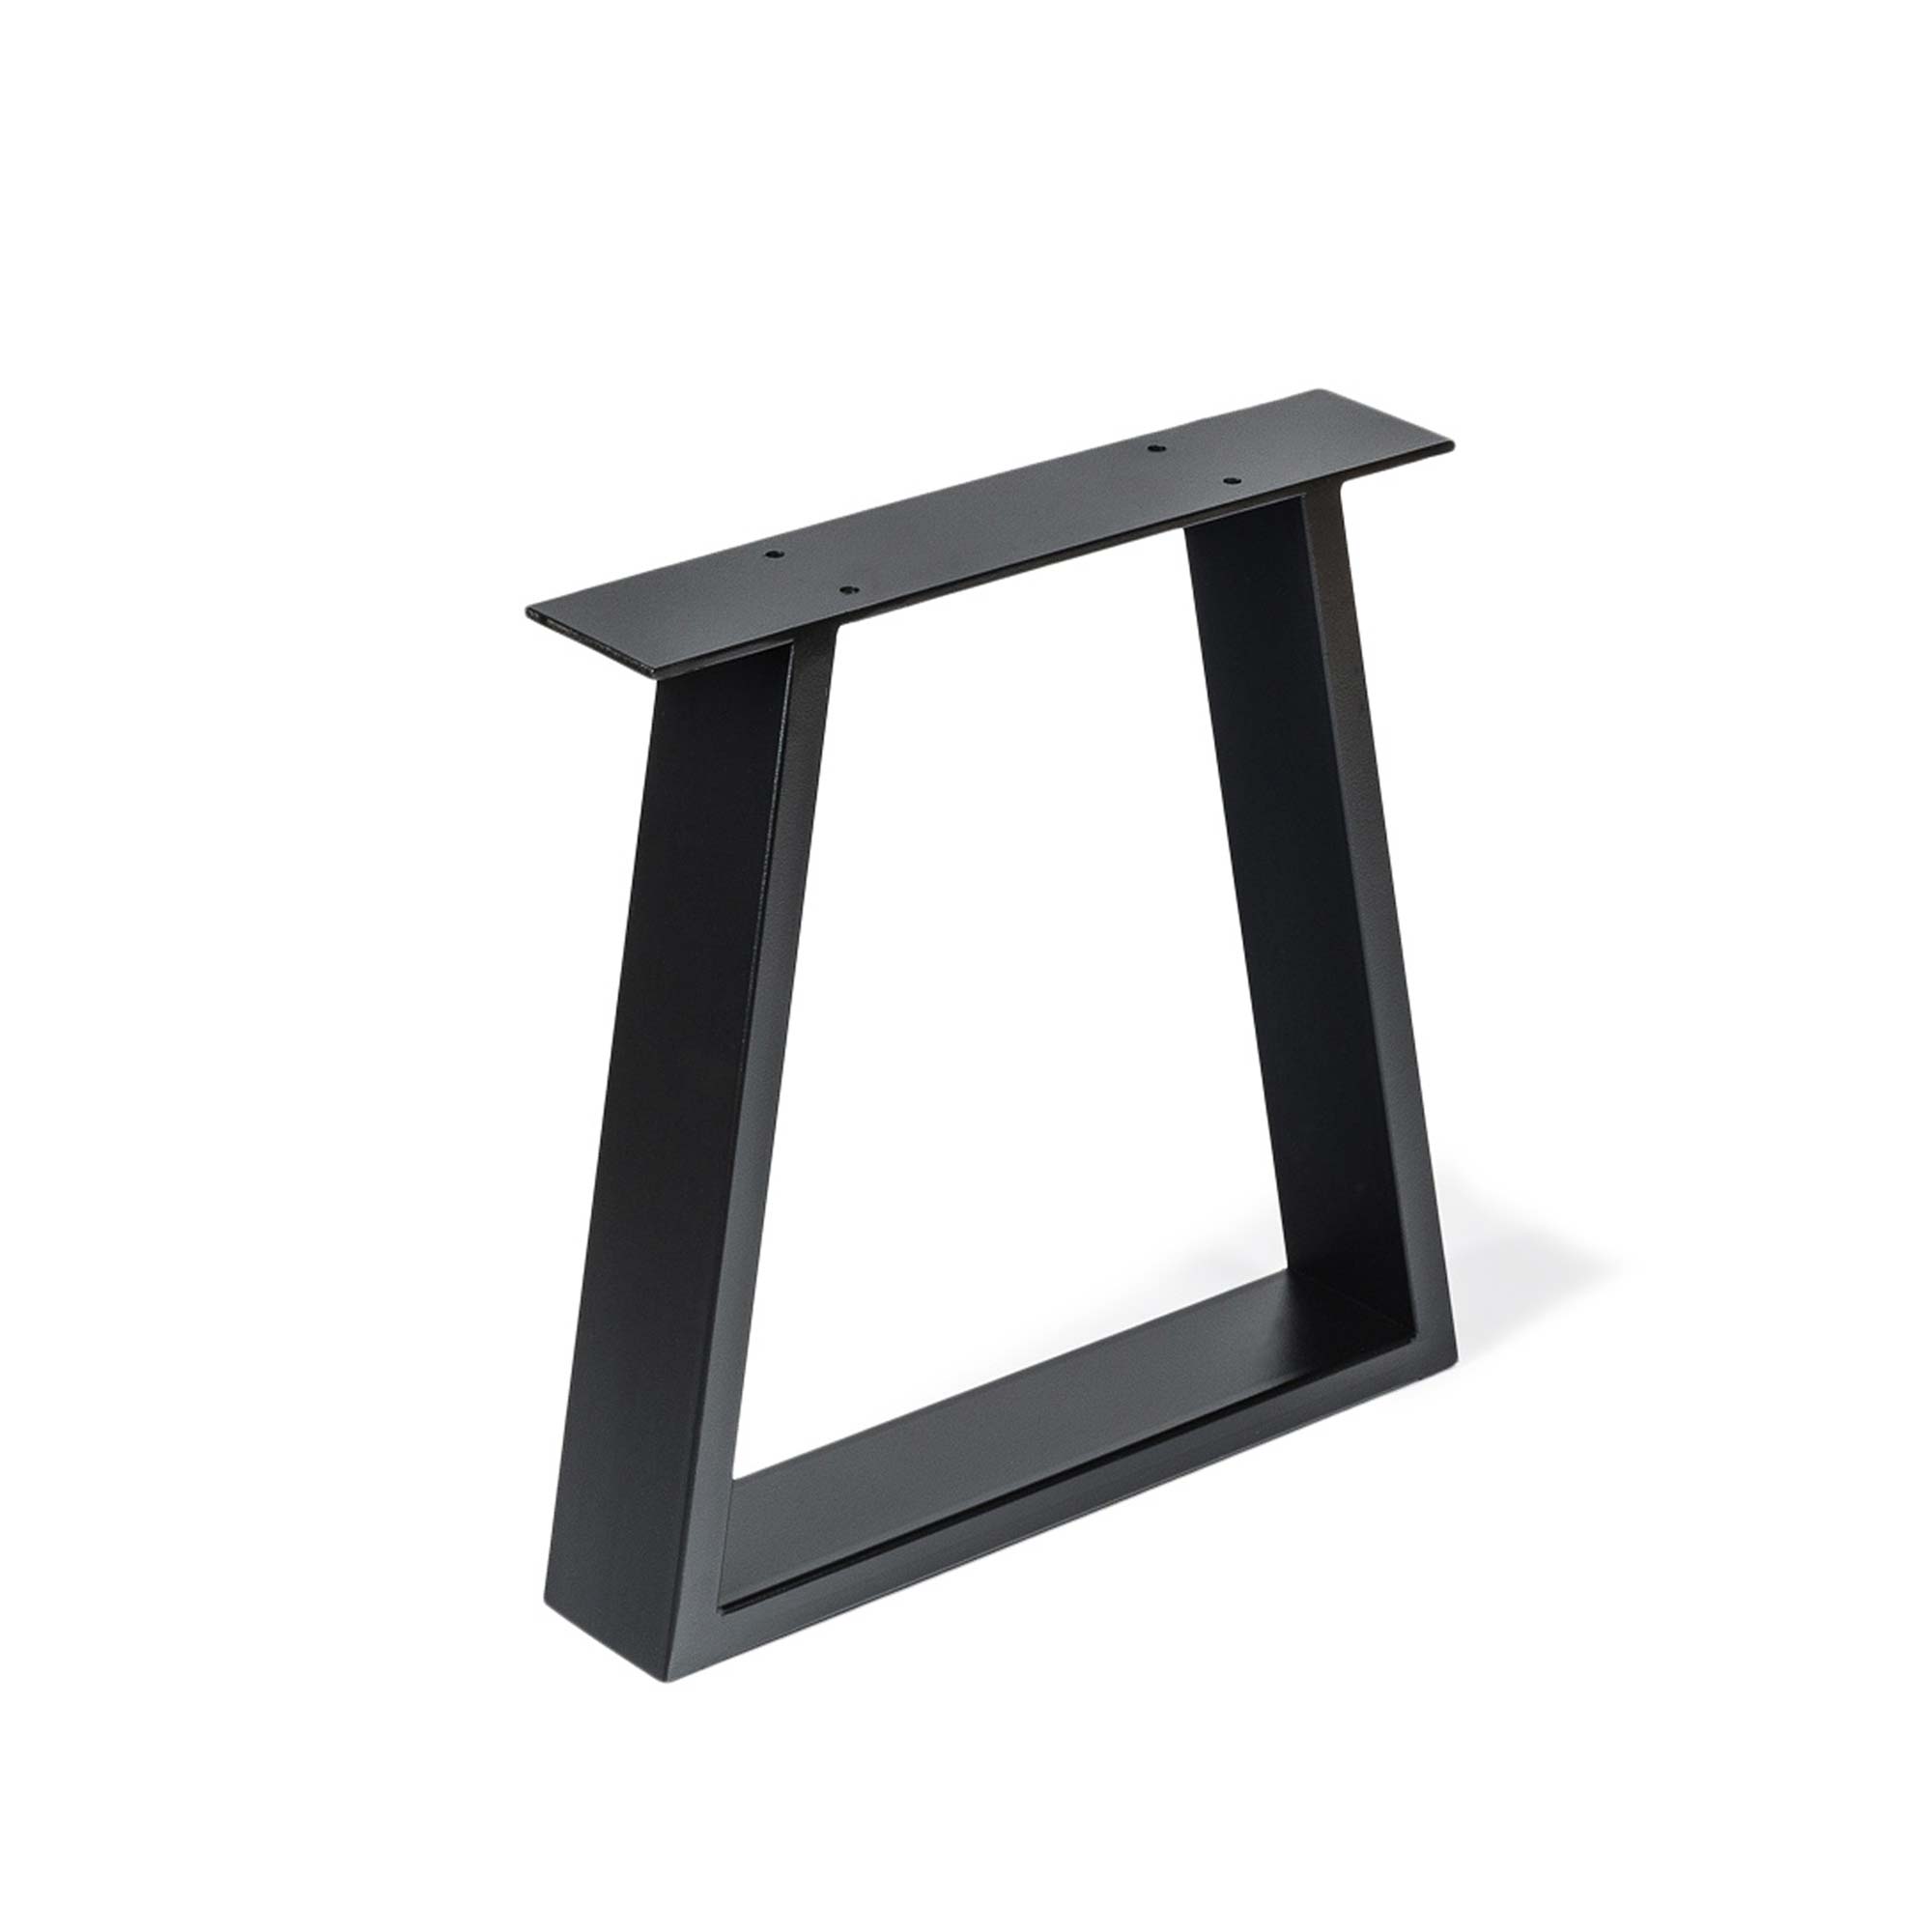 Pata para Muebles en Negro Poro | Medidas 380*80*382 mm | Altura: 38,2 cm | 1 Unidad